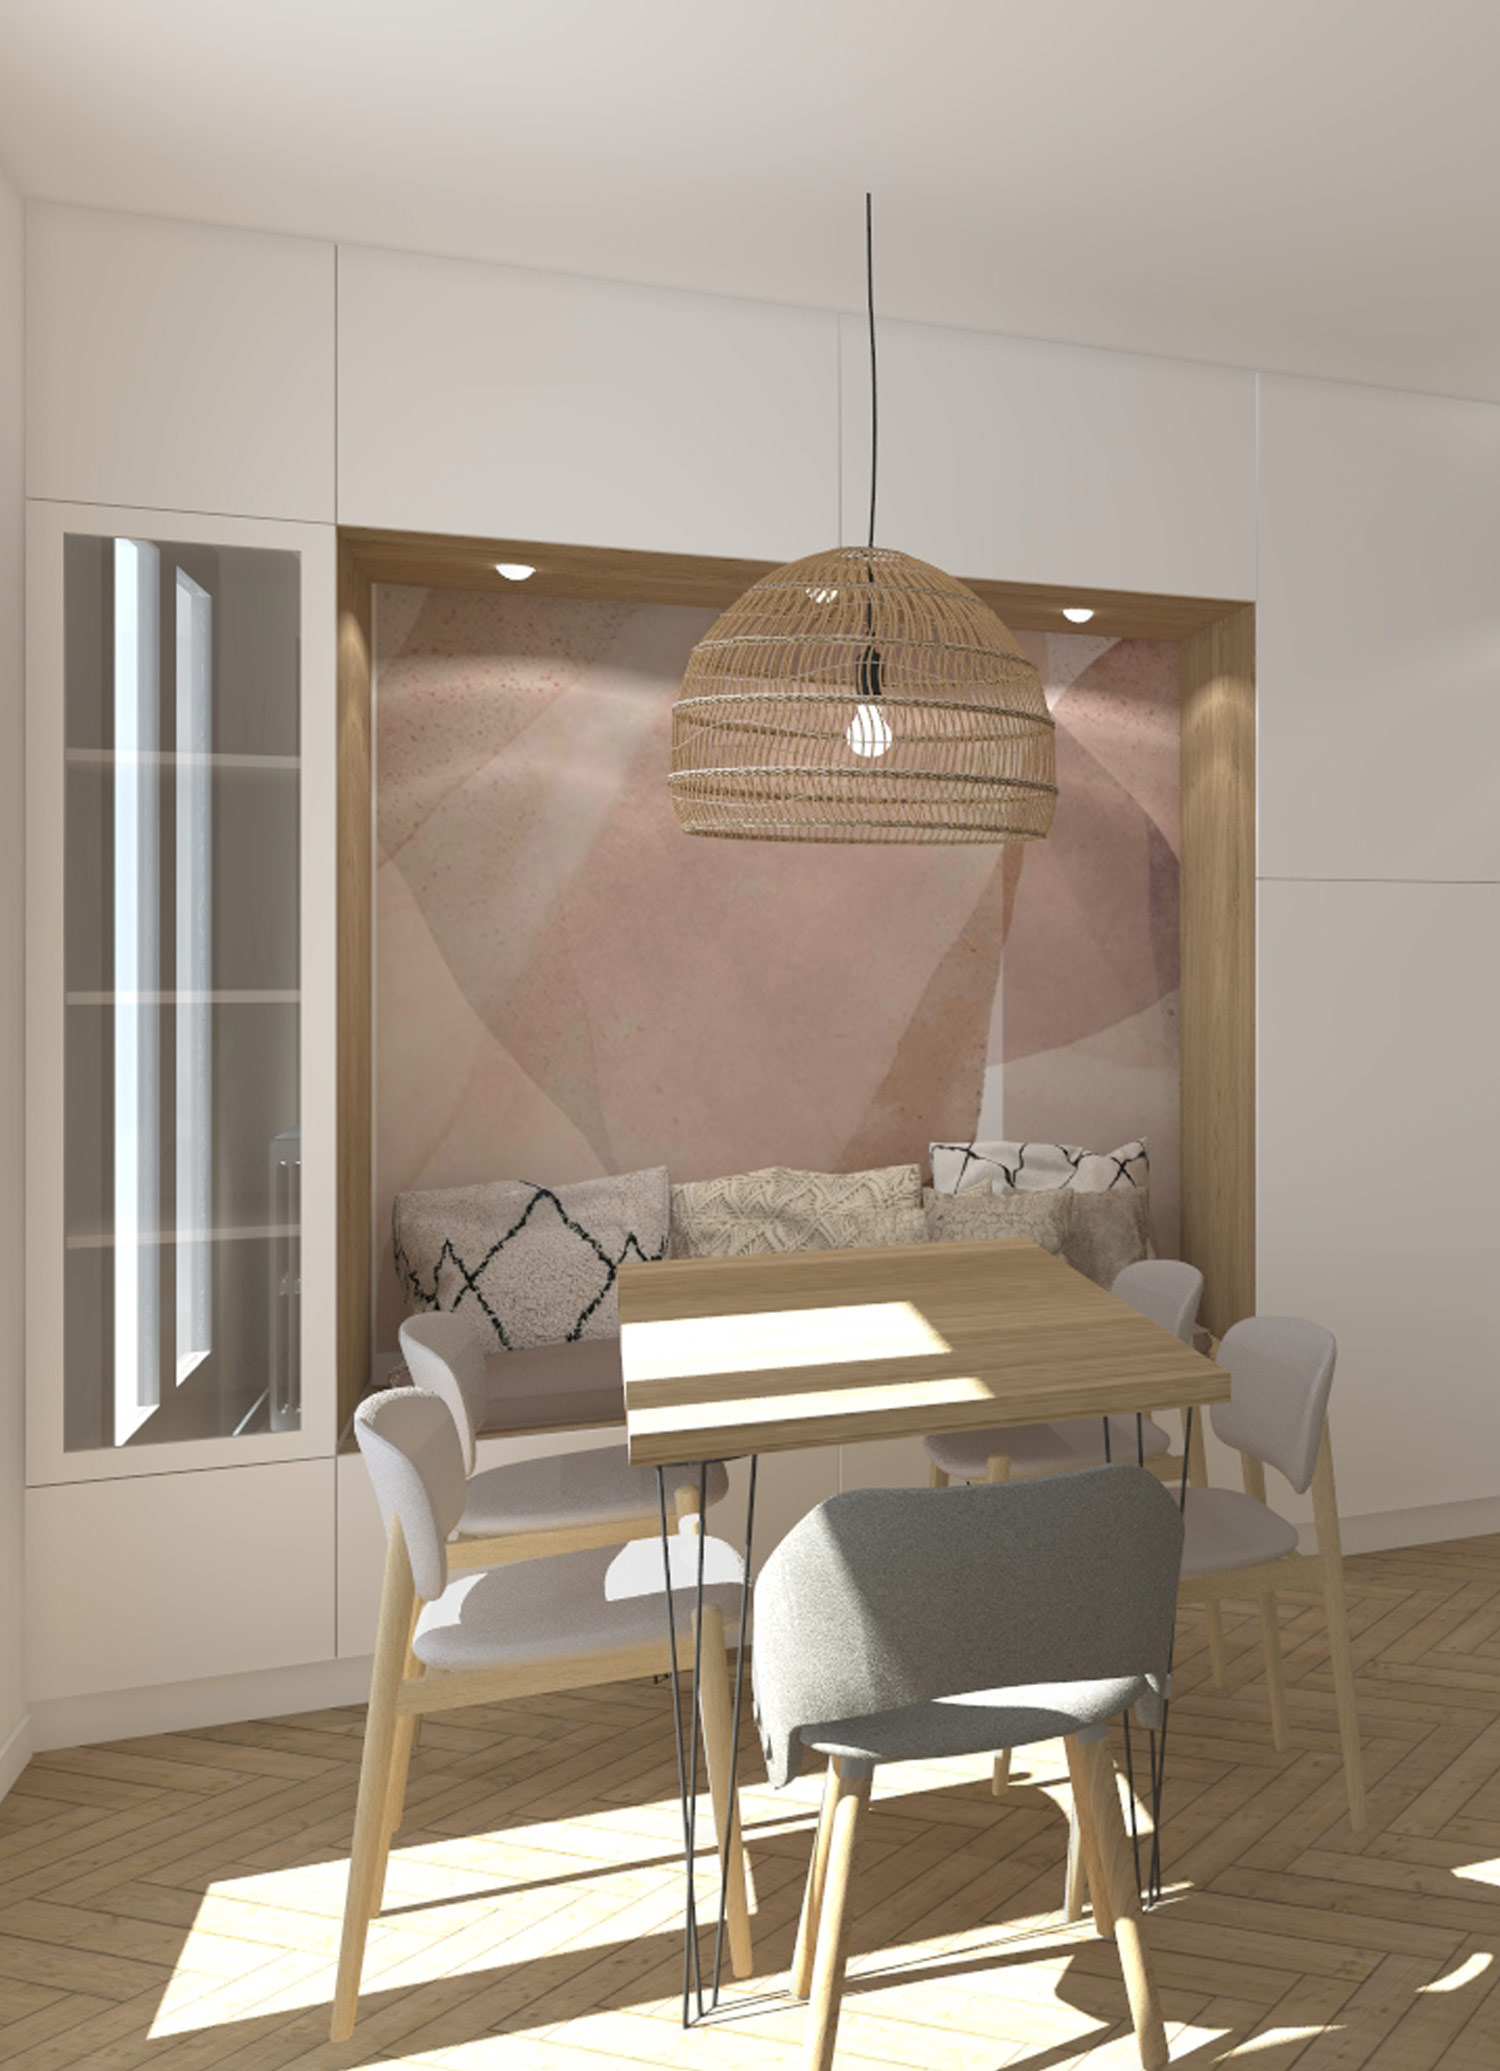 KLR : Rénovation intérieure d’un appartement à Paris, salle à manger avec niche papiers peints.